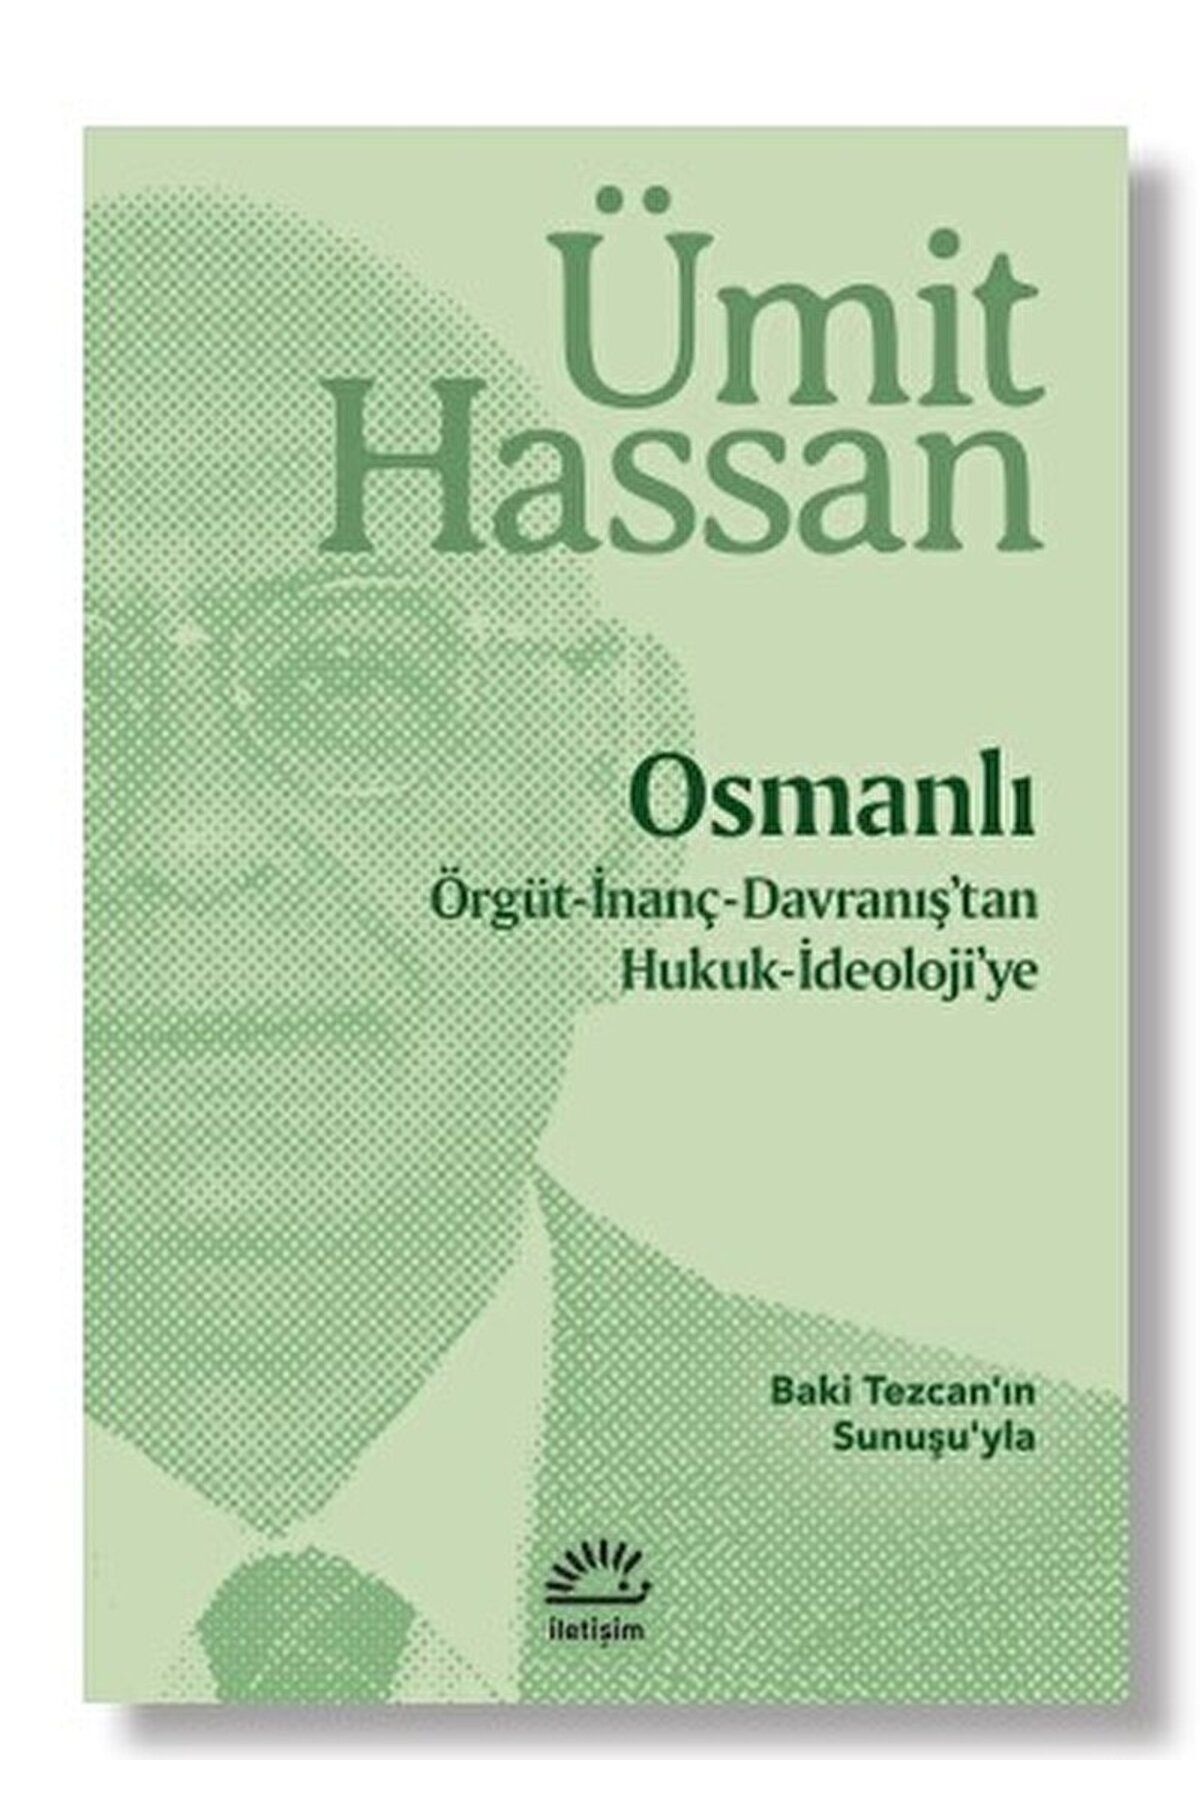 İletişim Yayınları Osmanlı / Ümit Hassan / İletişim Yayınevi / 9789750535925